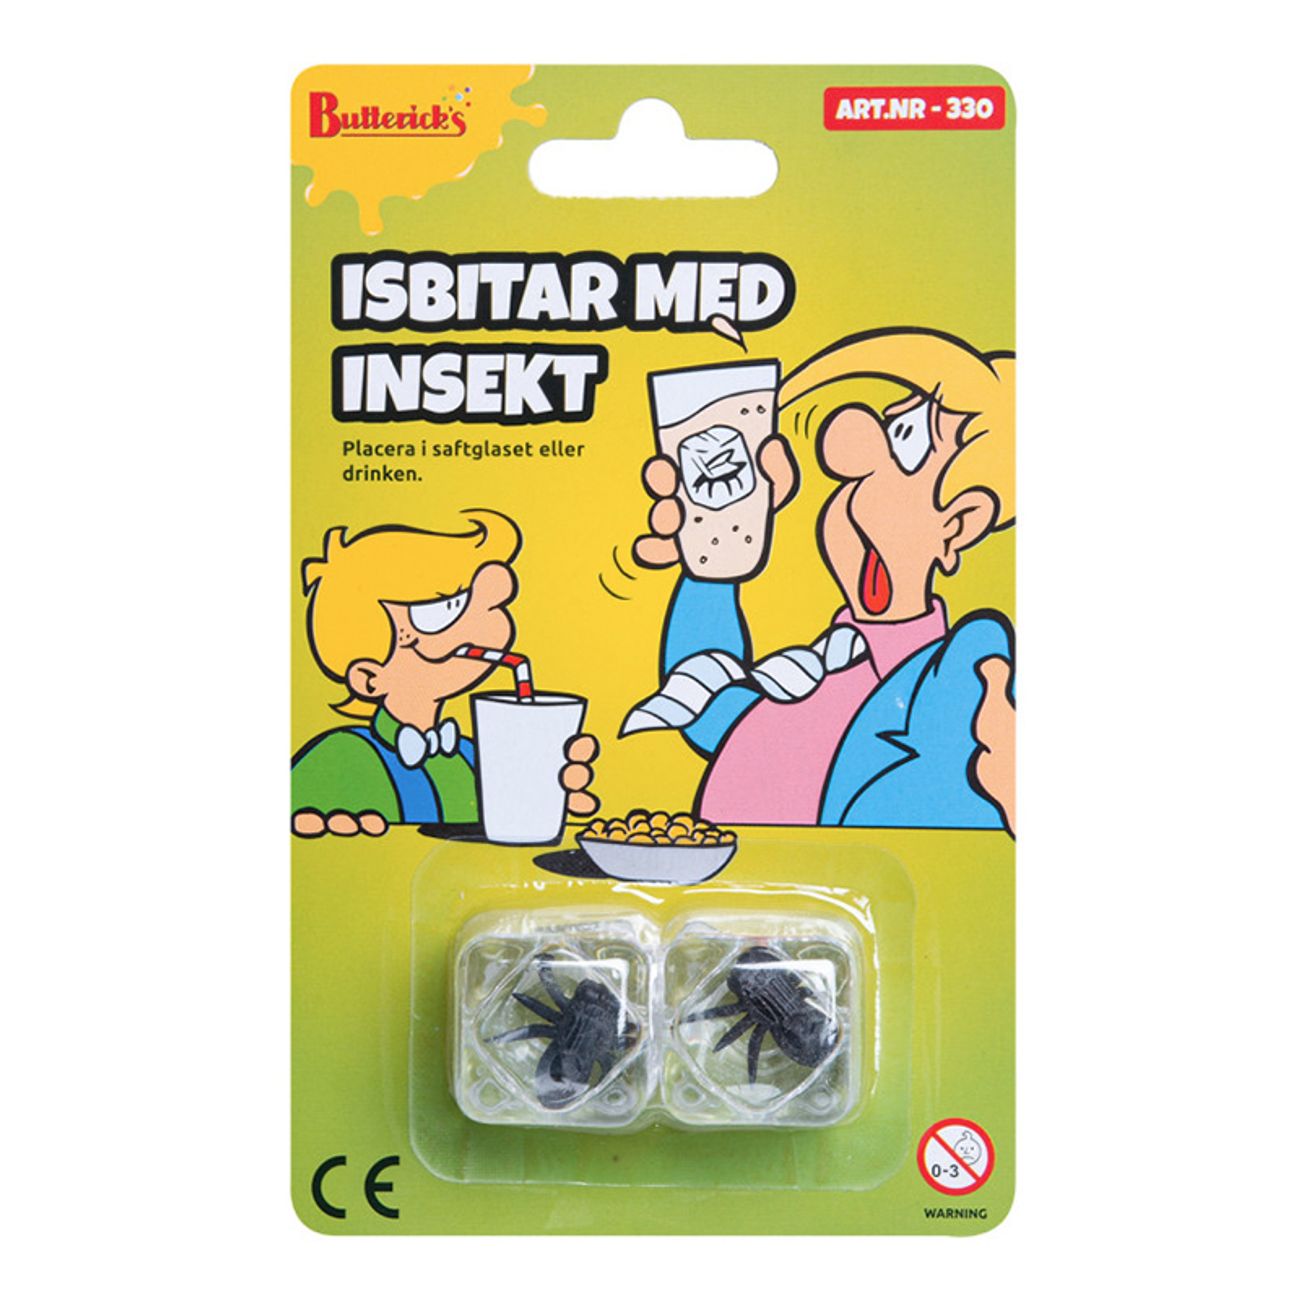 isbitar-med-insekt-1